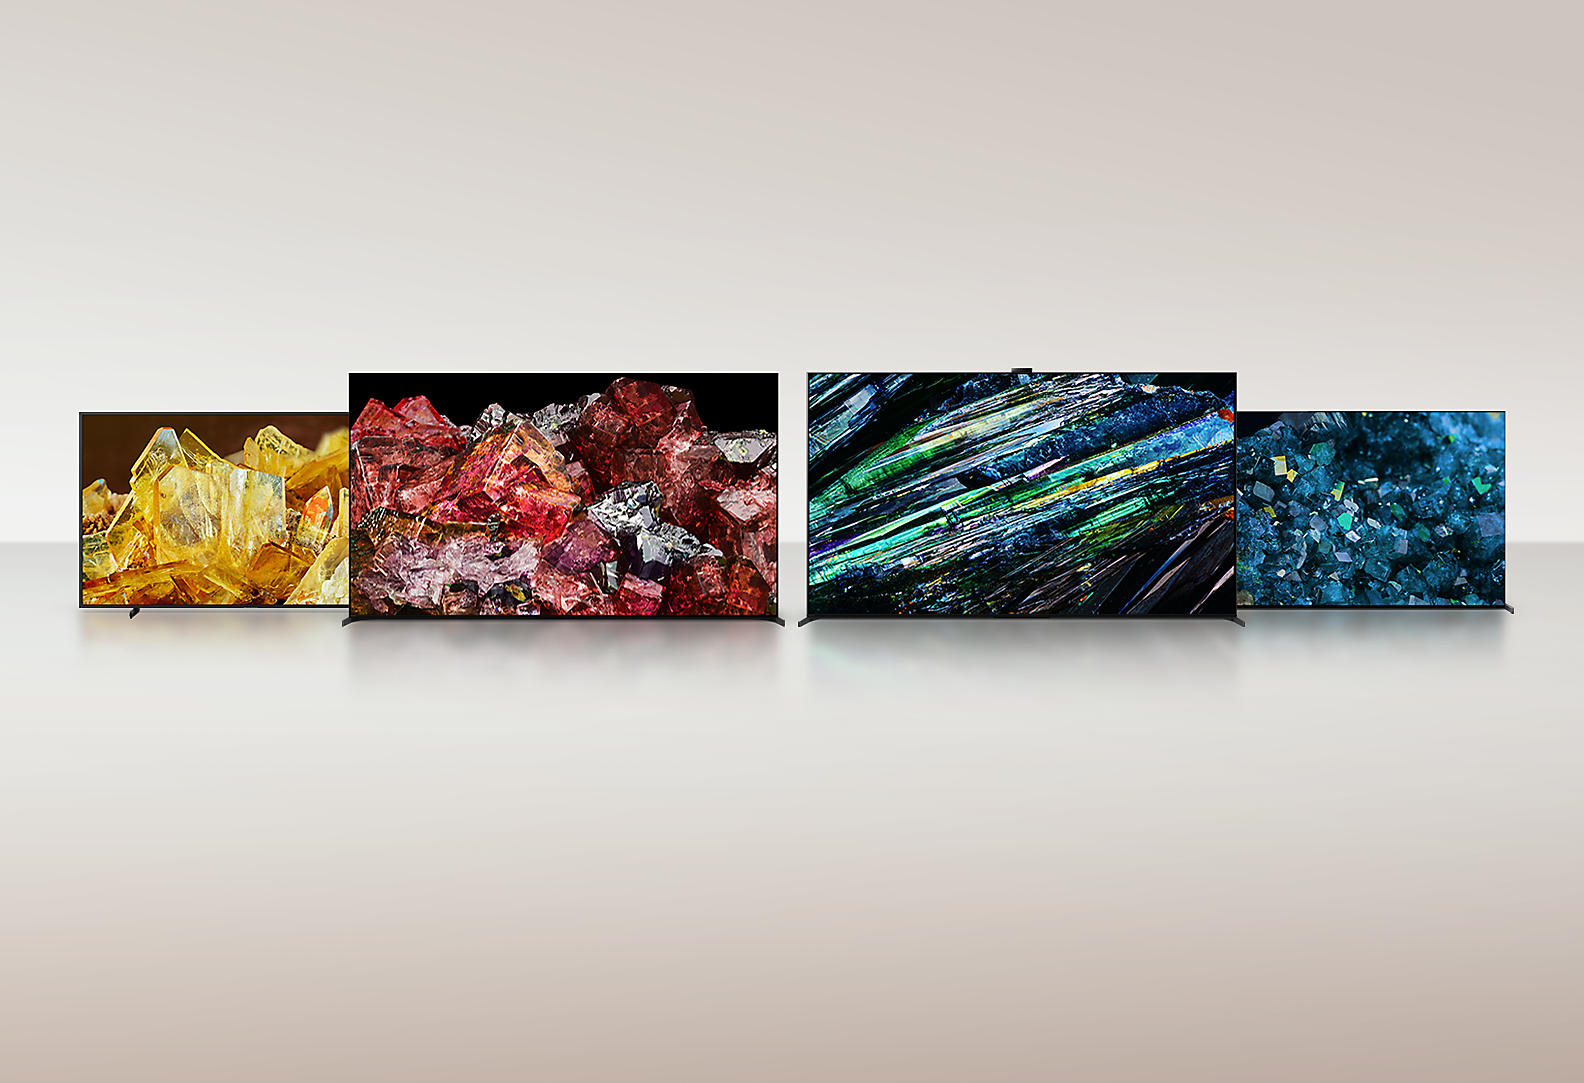 Quatre téléviseurs BRAVIA XR affichant des images de différents types de cristaux en plein écran, avec des détails et des couleurs exceptionnels